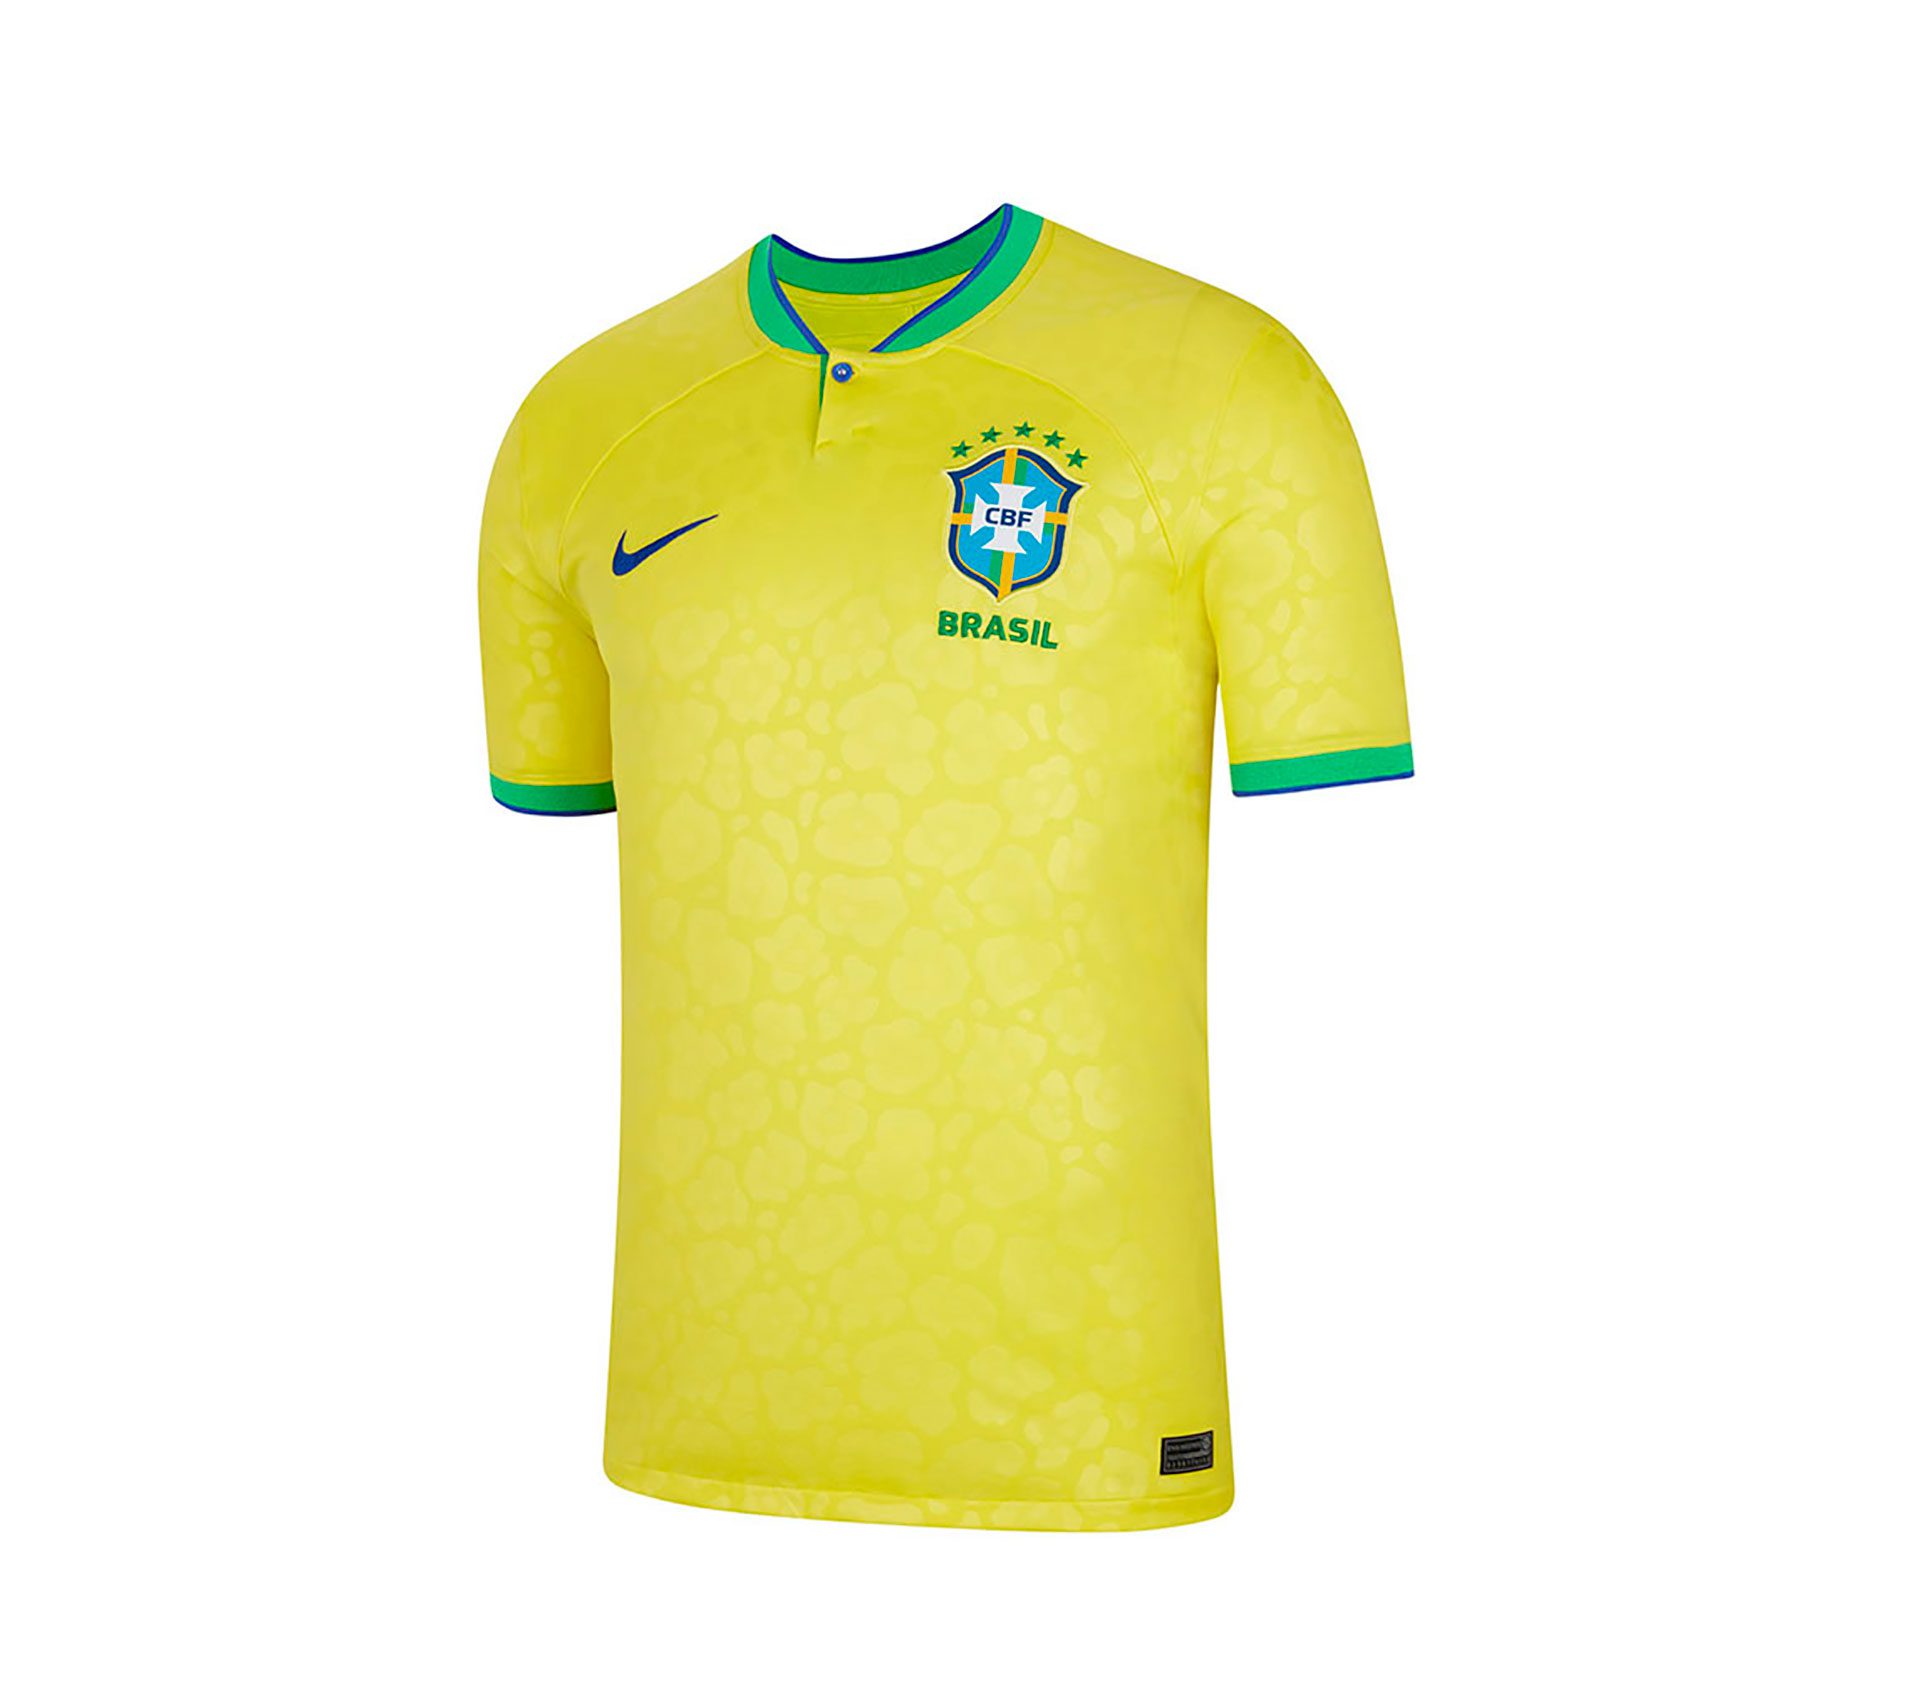 Brazil national team shirt